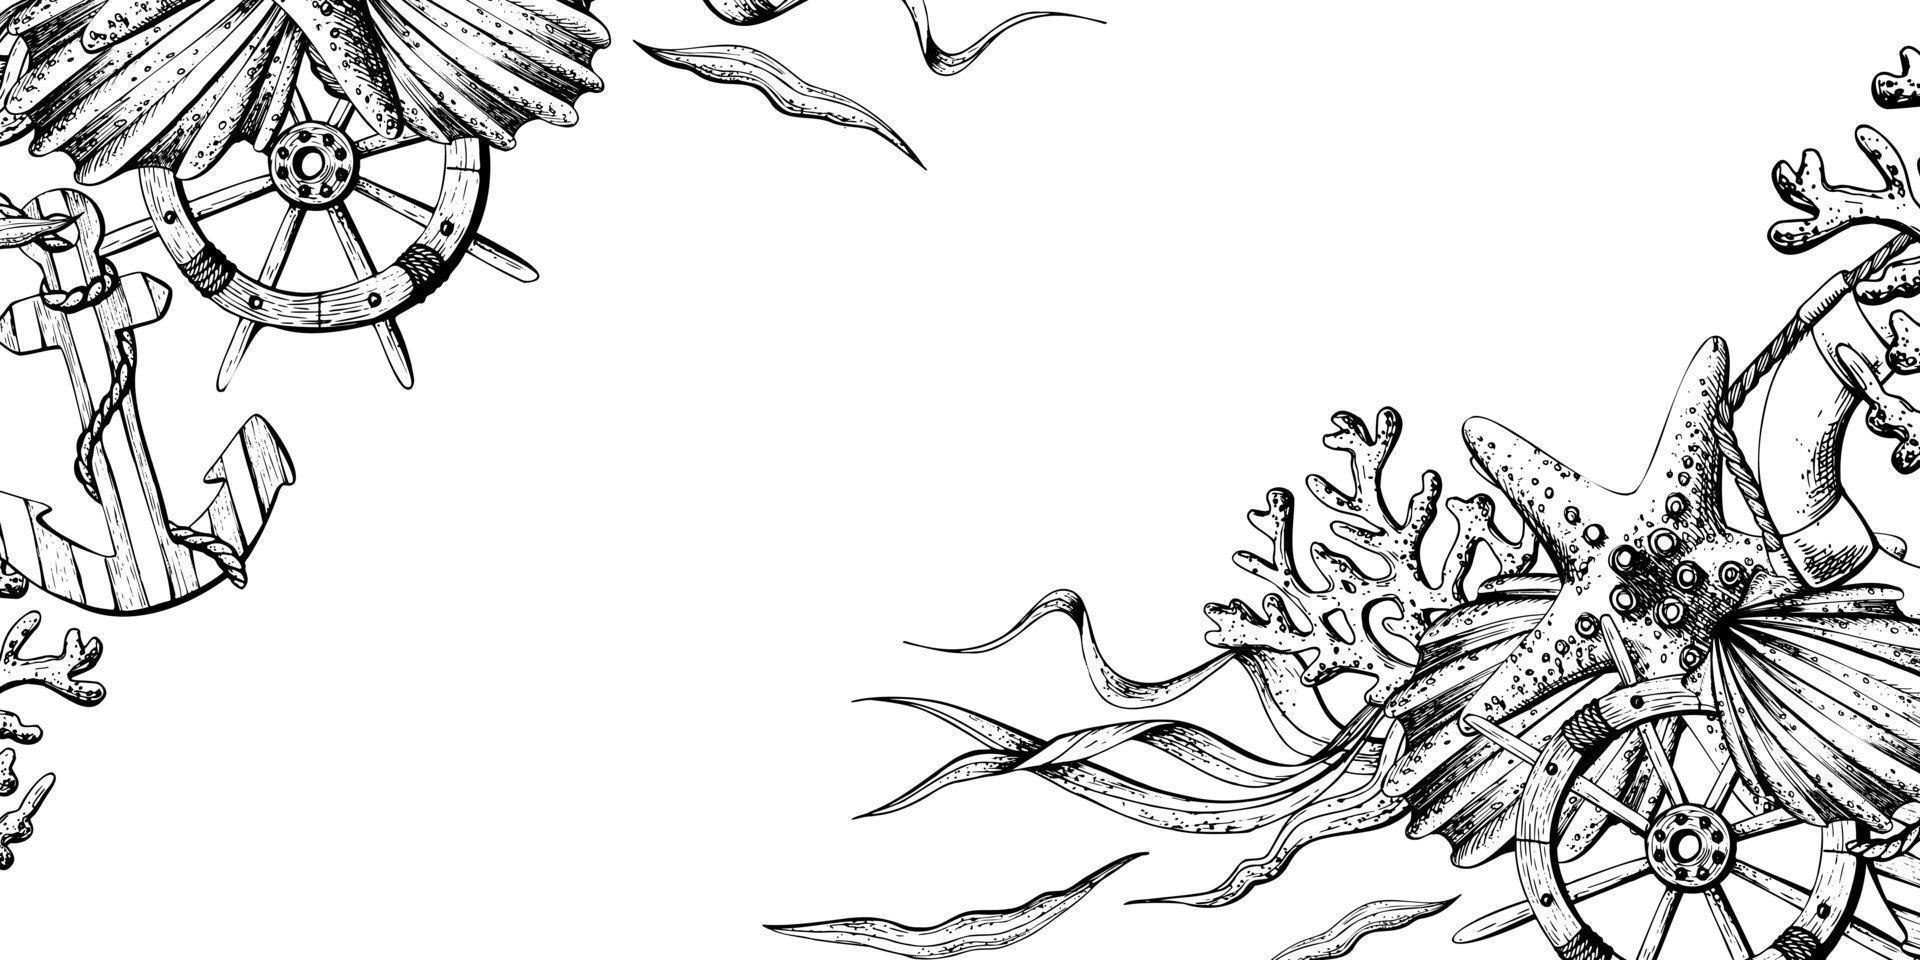 marina animales con ancla, timón y boya salvavidas. ilustración de mano dibujado gráficos, vector en eps formato. plantilla, marco en blanco antecedentes.